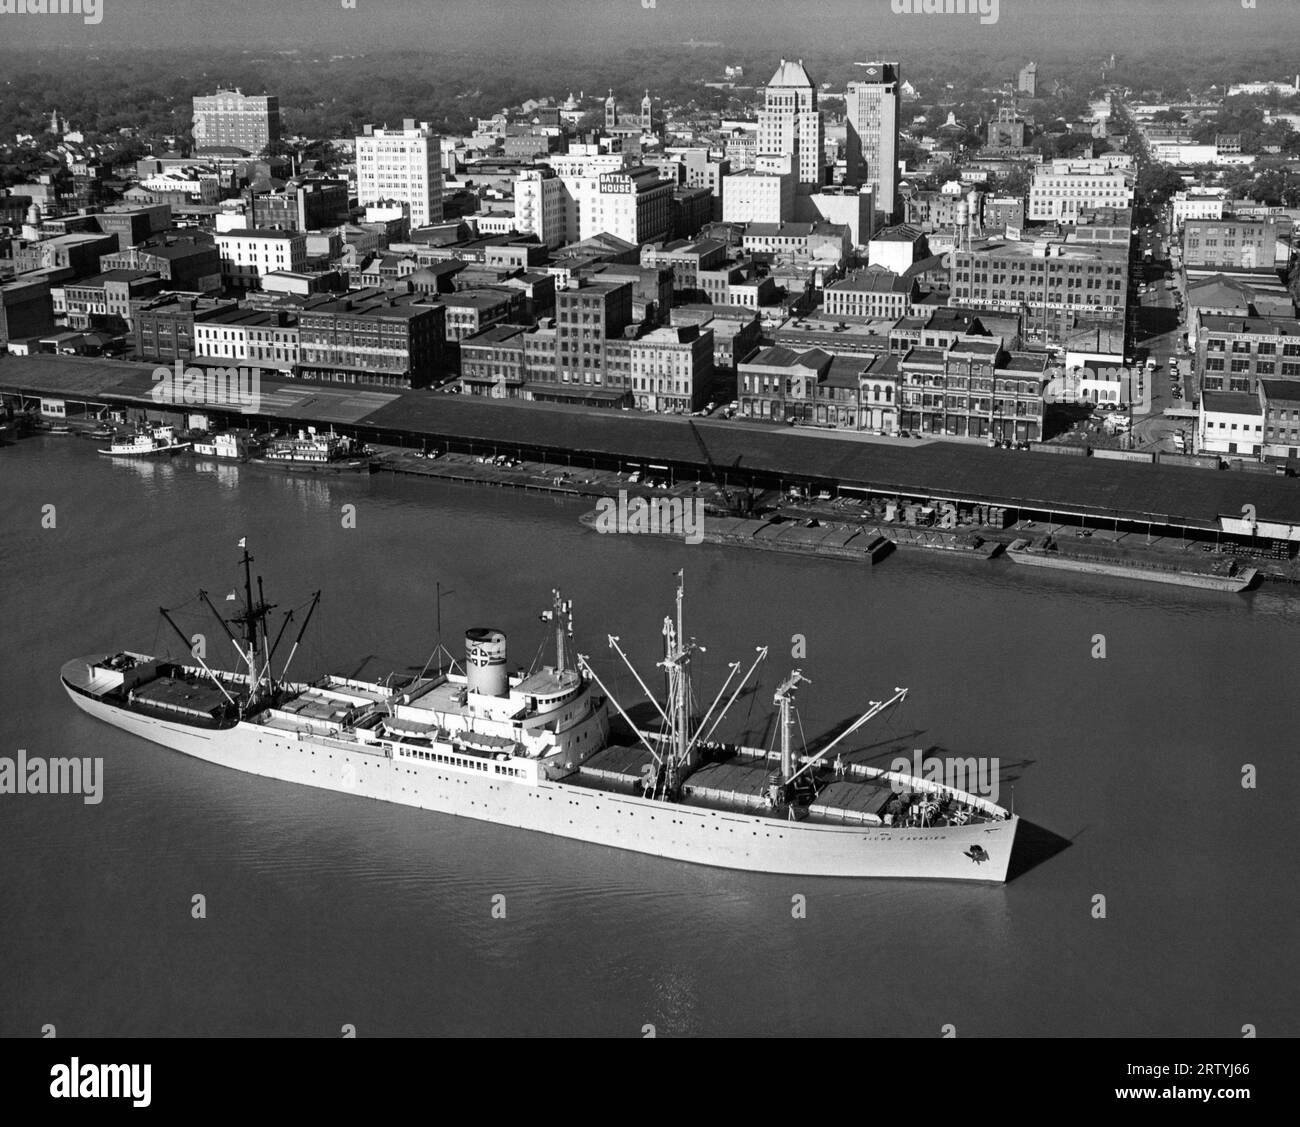 Mobile, Alabama vers 1961 vue aérienne du navire SS Alcoa cavalier dans la rivière Mobile avec la ville de Mobile en arrière-plan. Banque D'Images